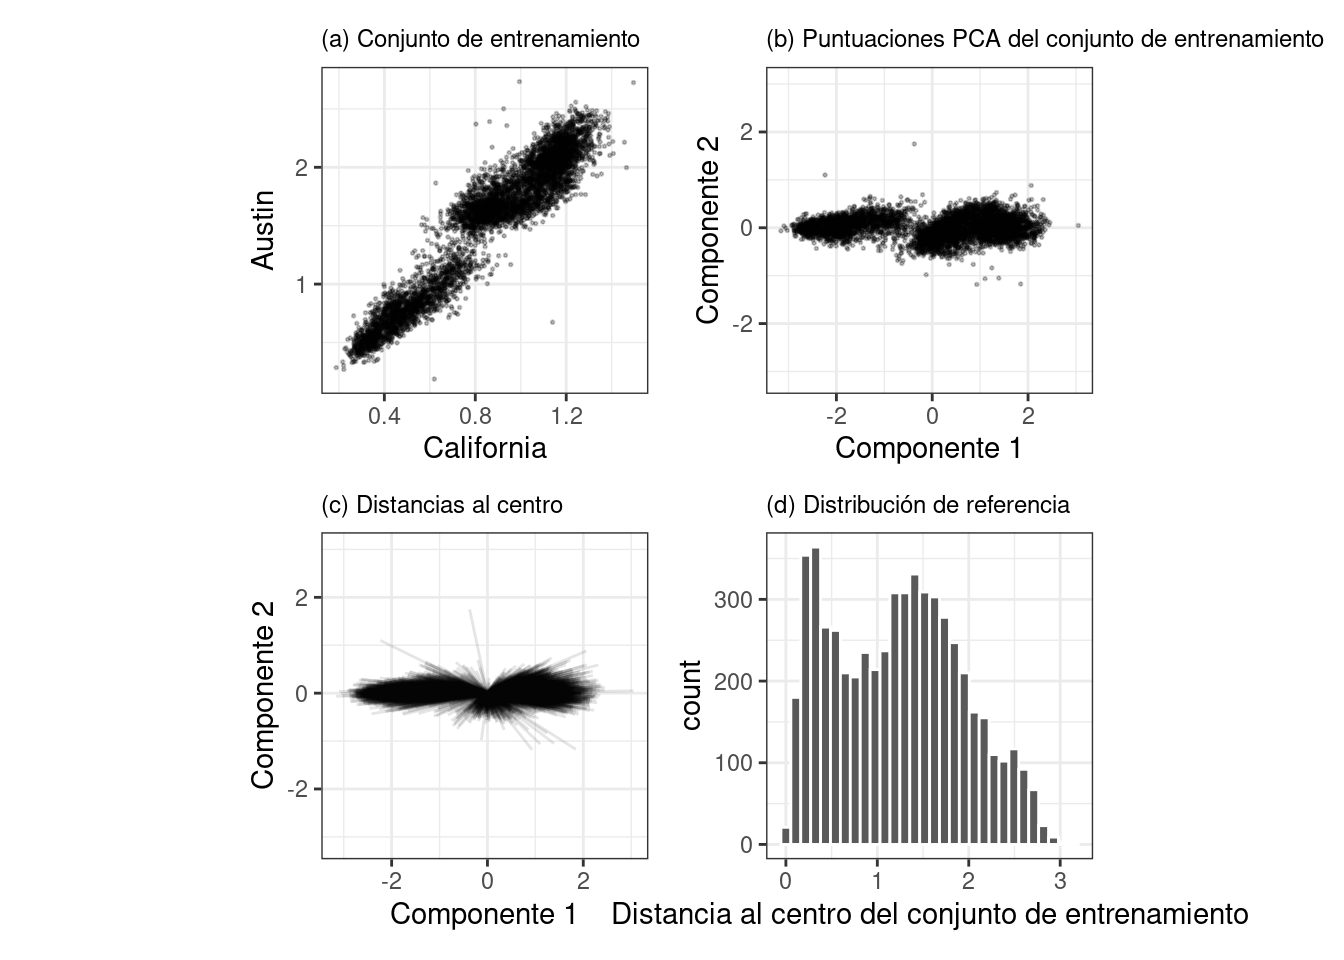 La distribución de referencia de PCA basada en el conjunto de entrenamiento. La mayoría de las distancias al centro de la distribución PCA están por debajo de un valor de tres.